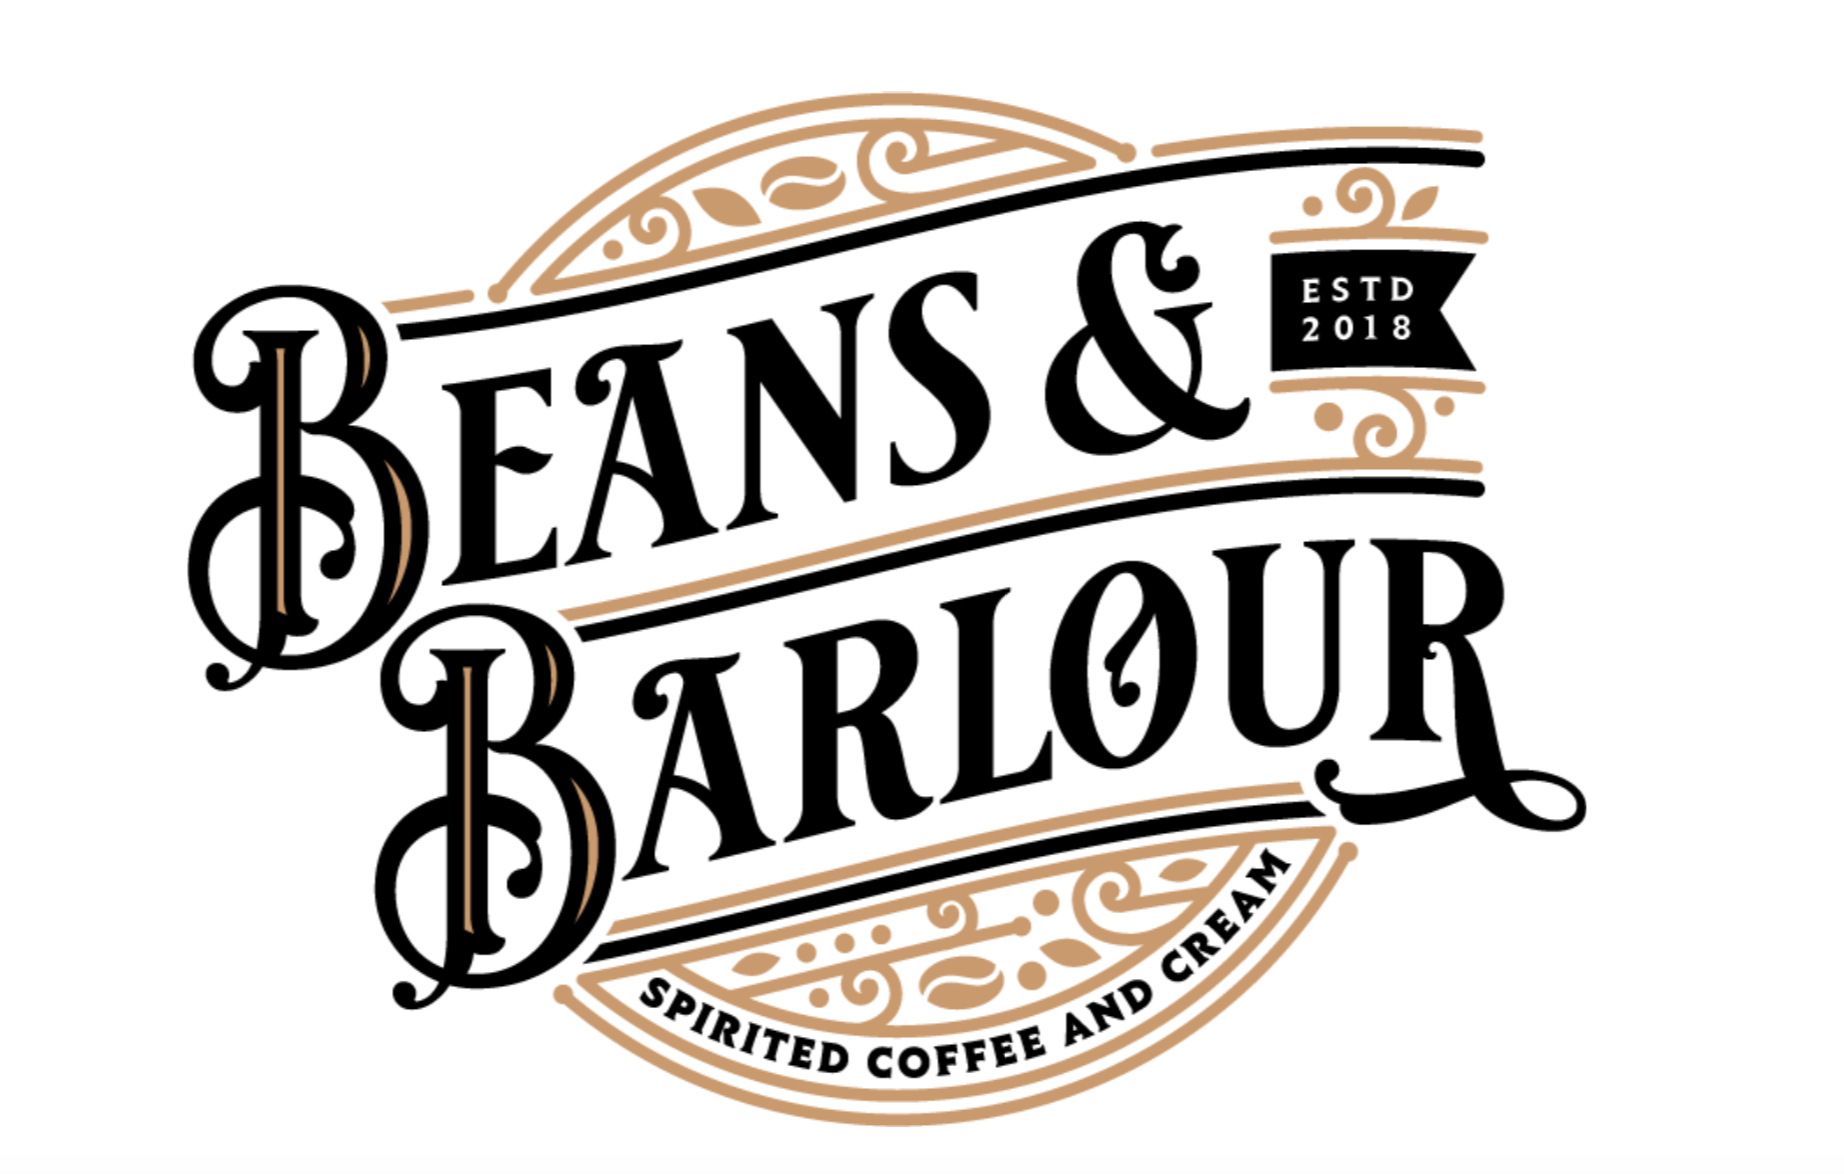 Beans & Barlour